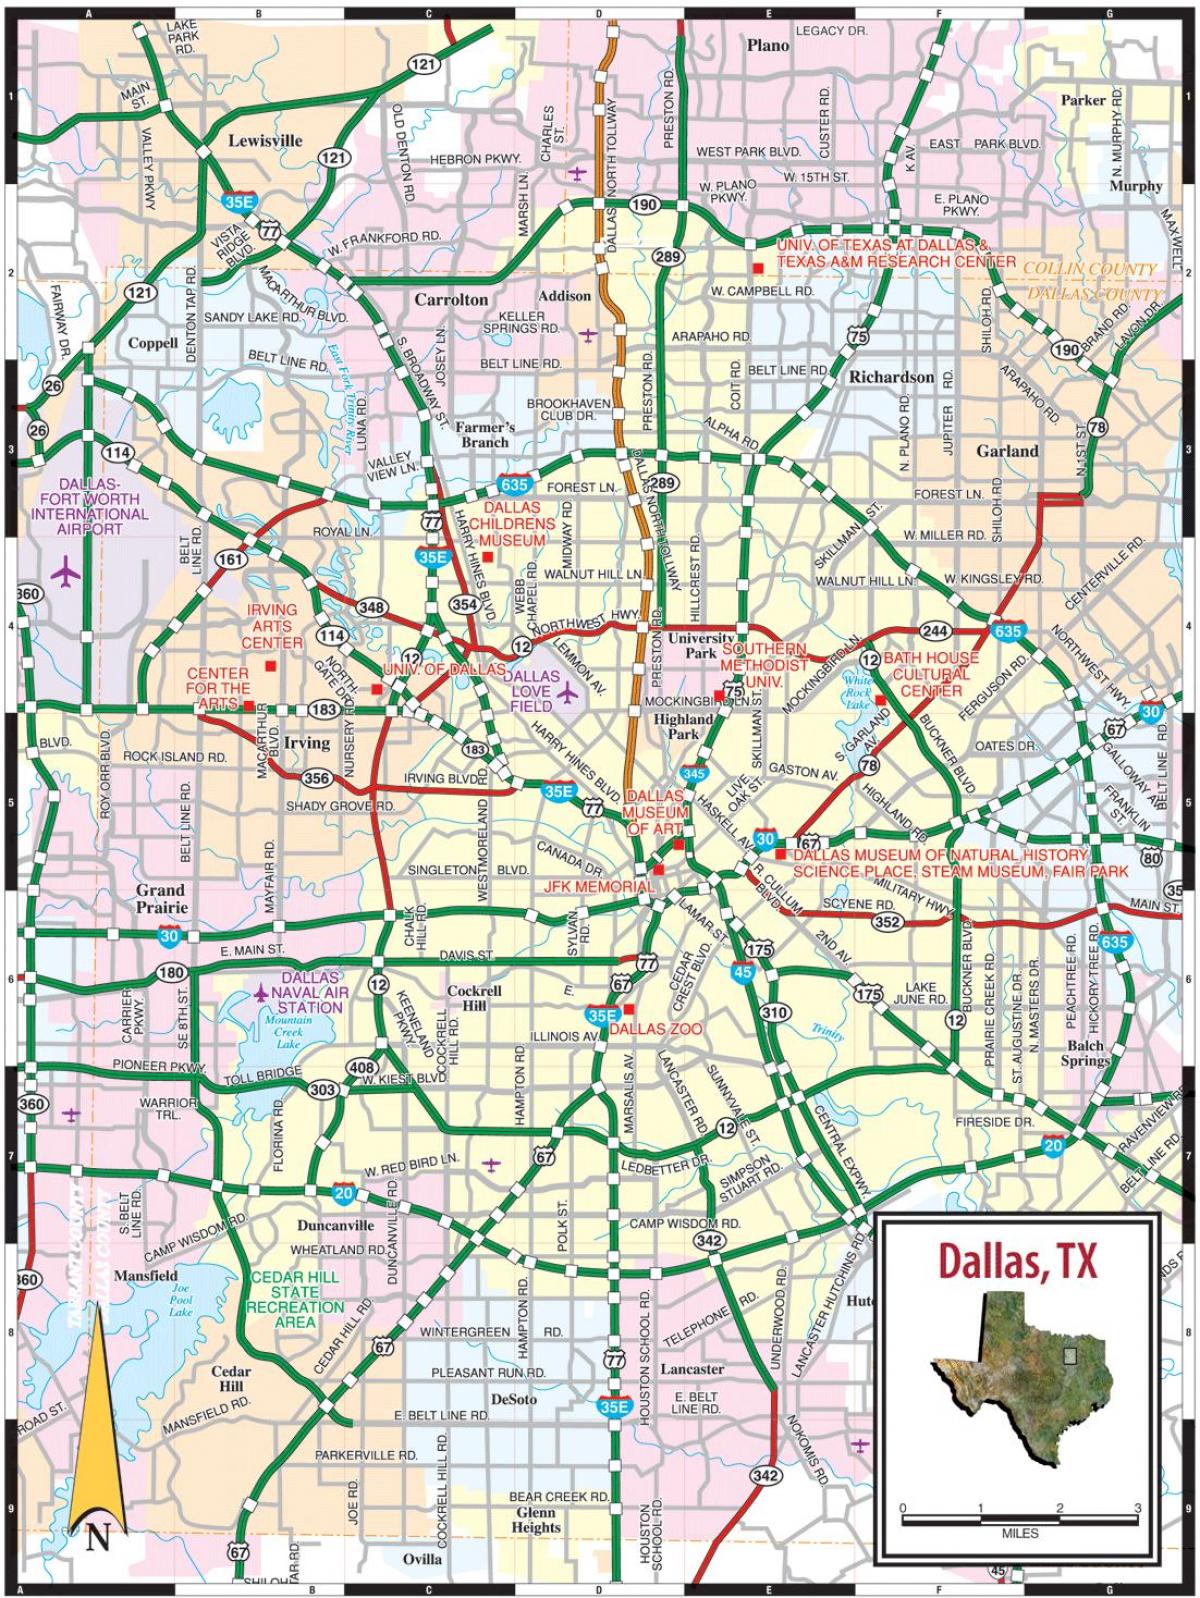 mapi Dallasa tx